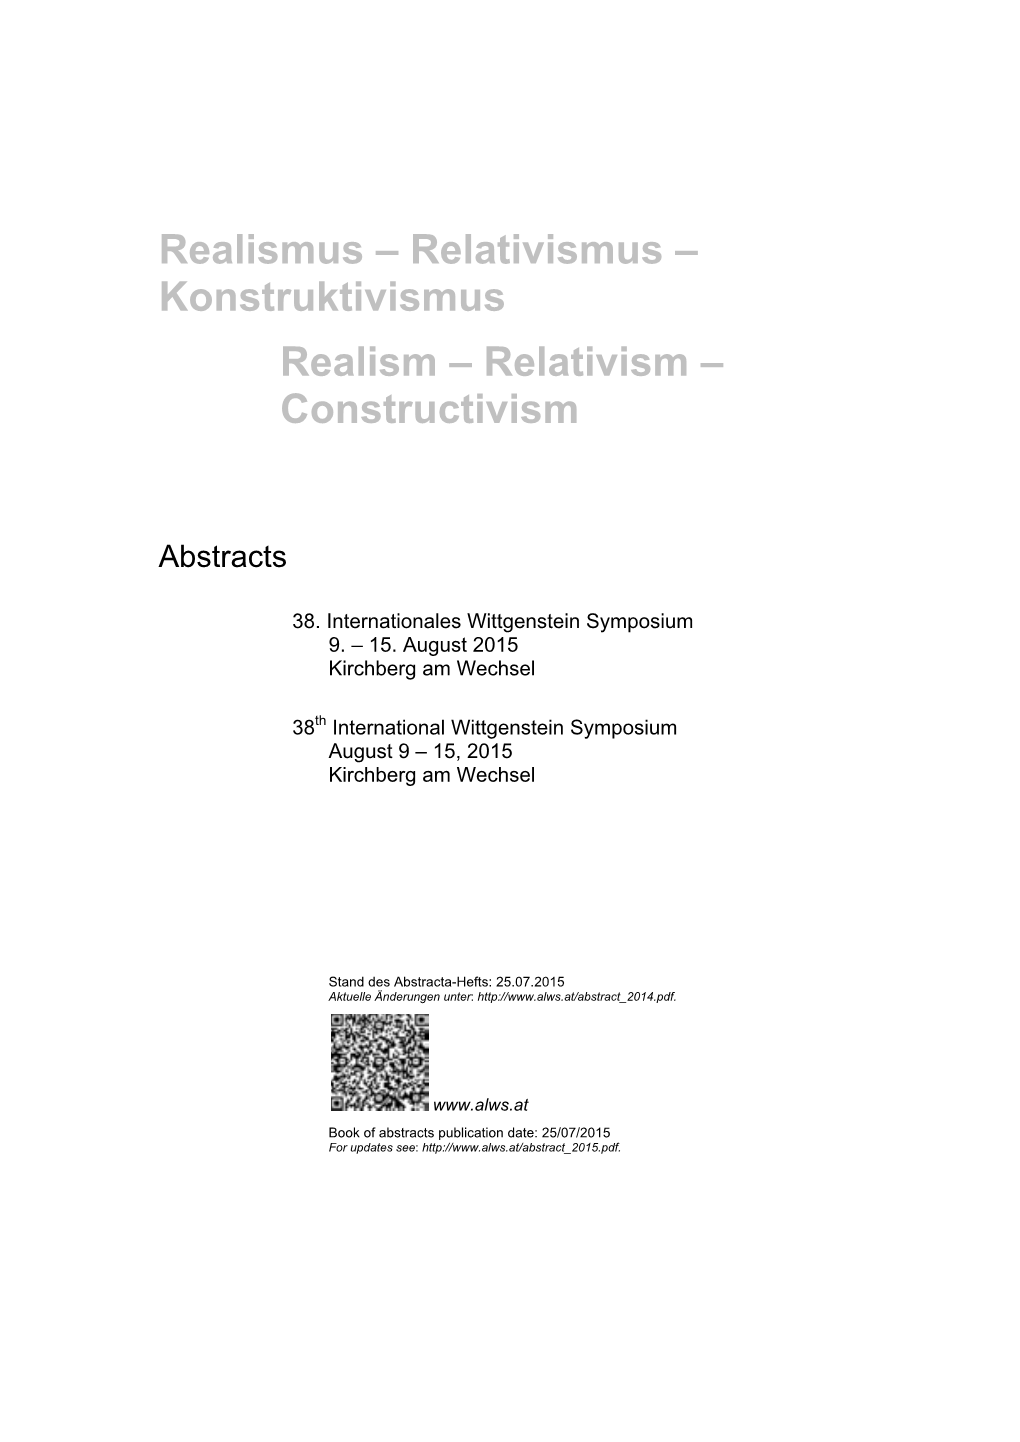 Realismus – Relativismus – Konstruktivismus